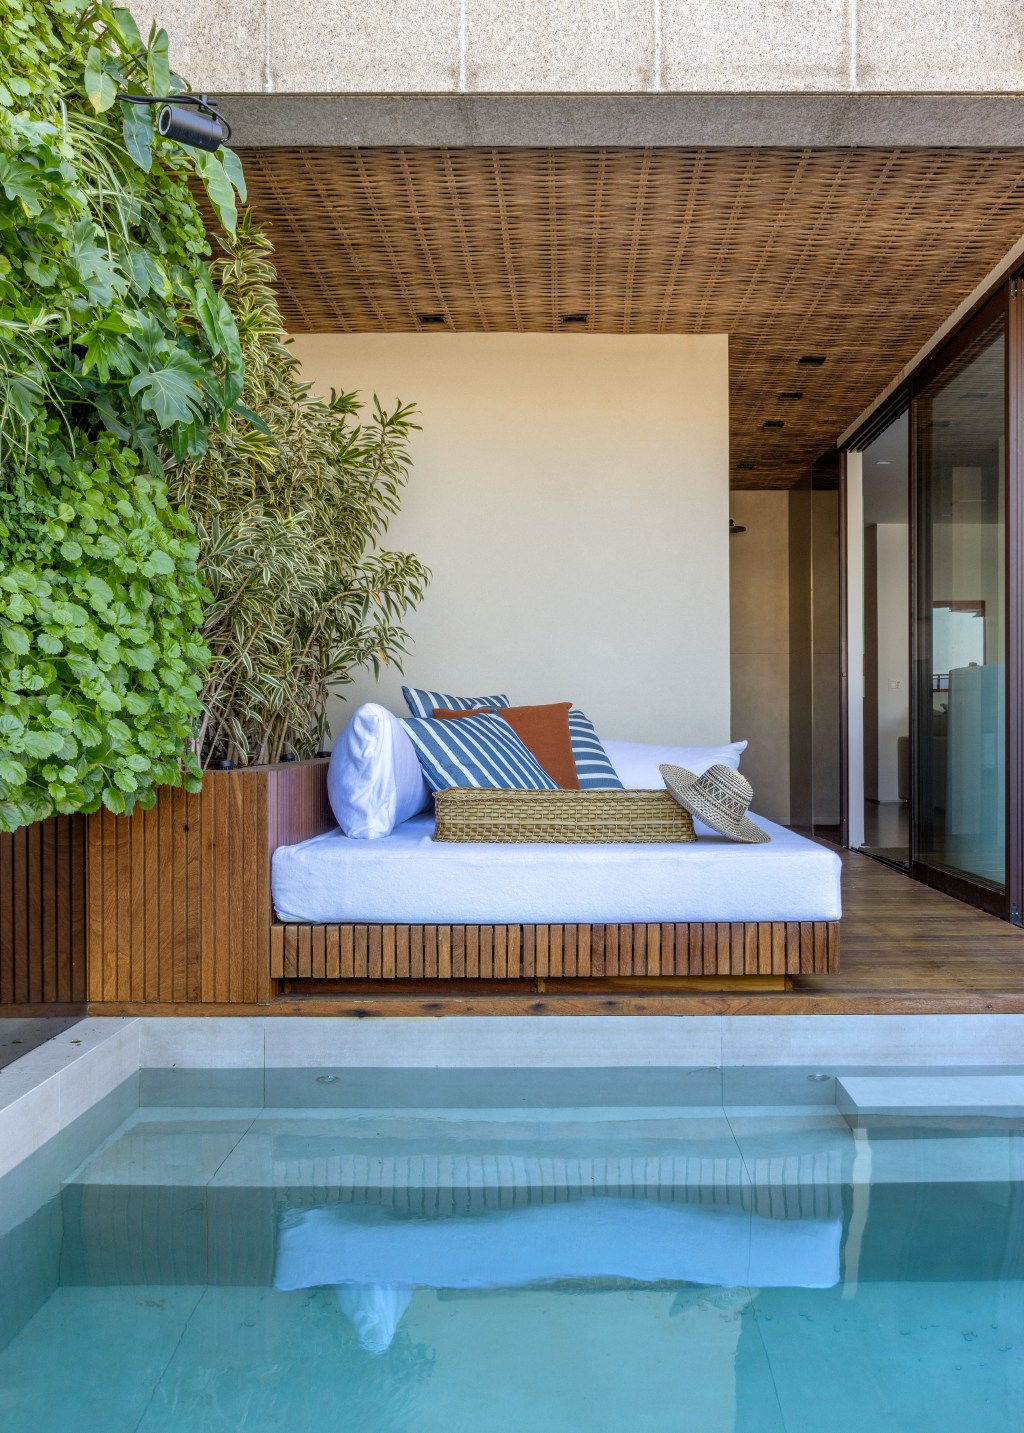 Apê 400 m² cara de casa design brasileiro arte Escala Arquitetura Rio de Janeiro decoracao varanda piscina jardim